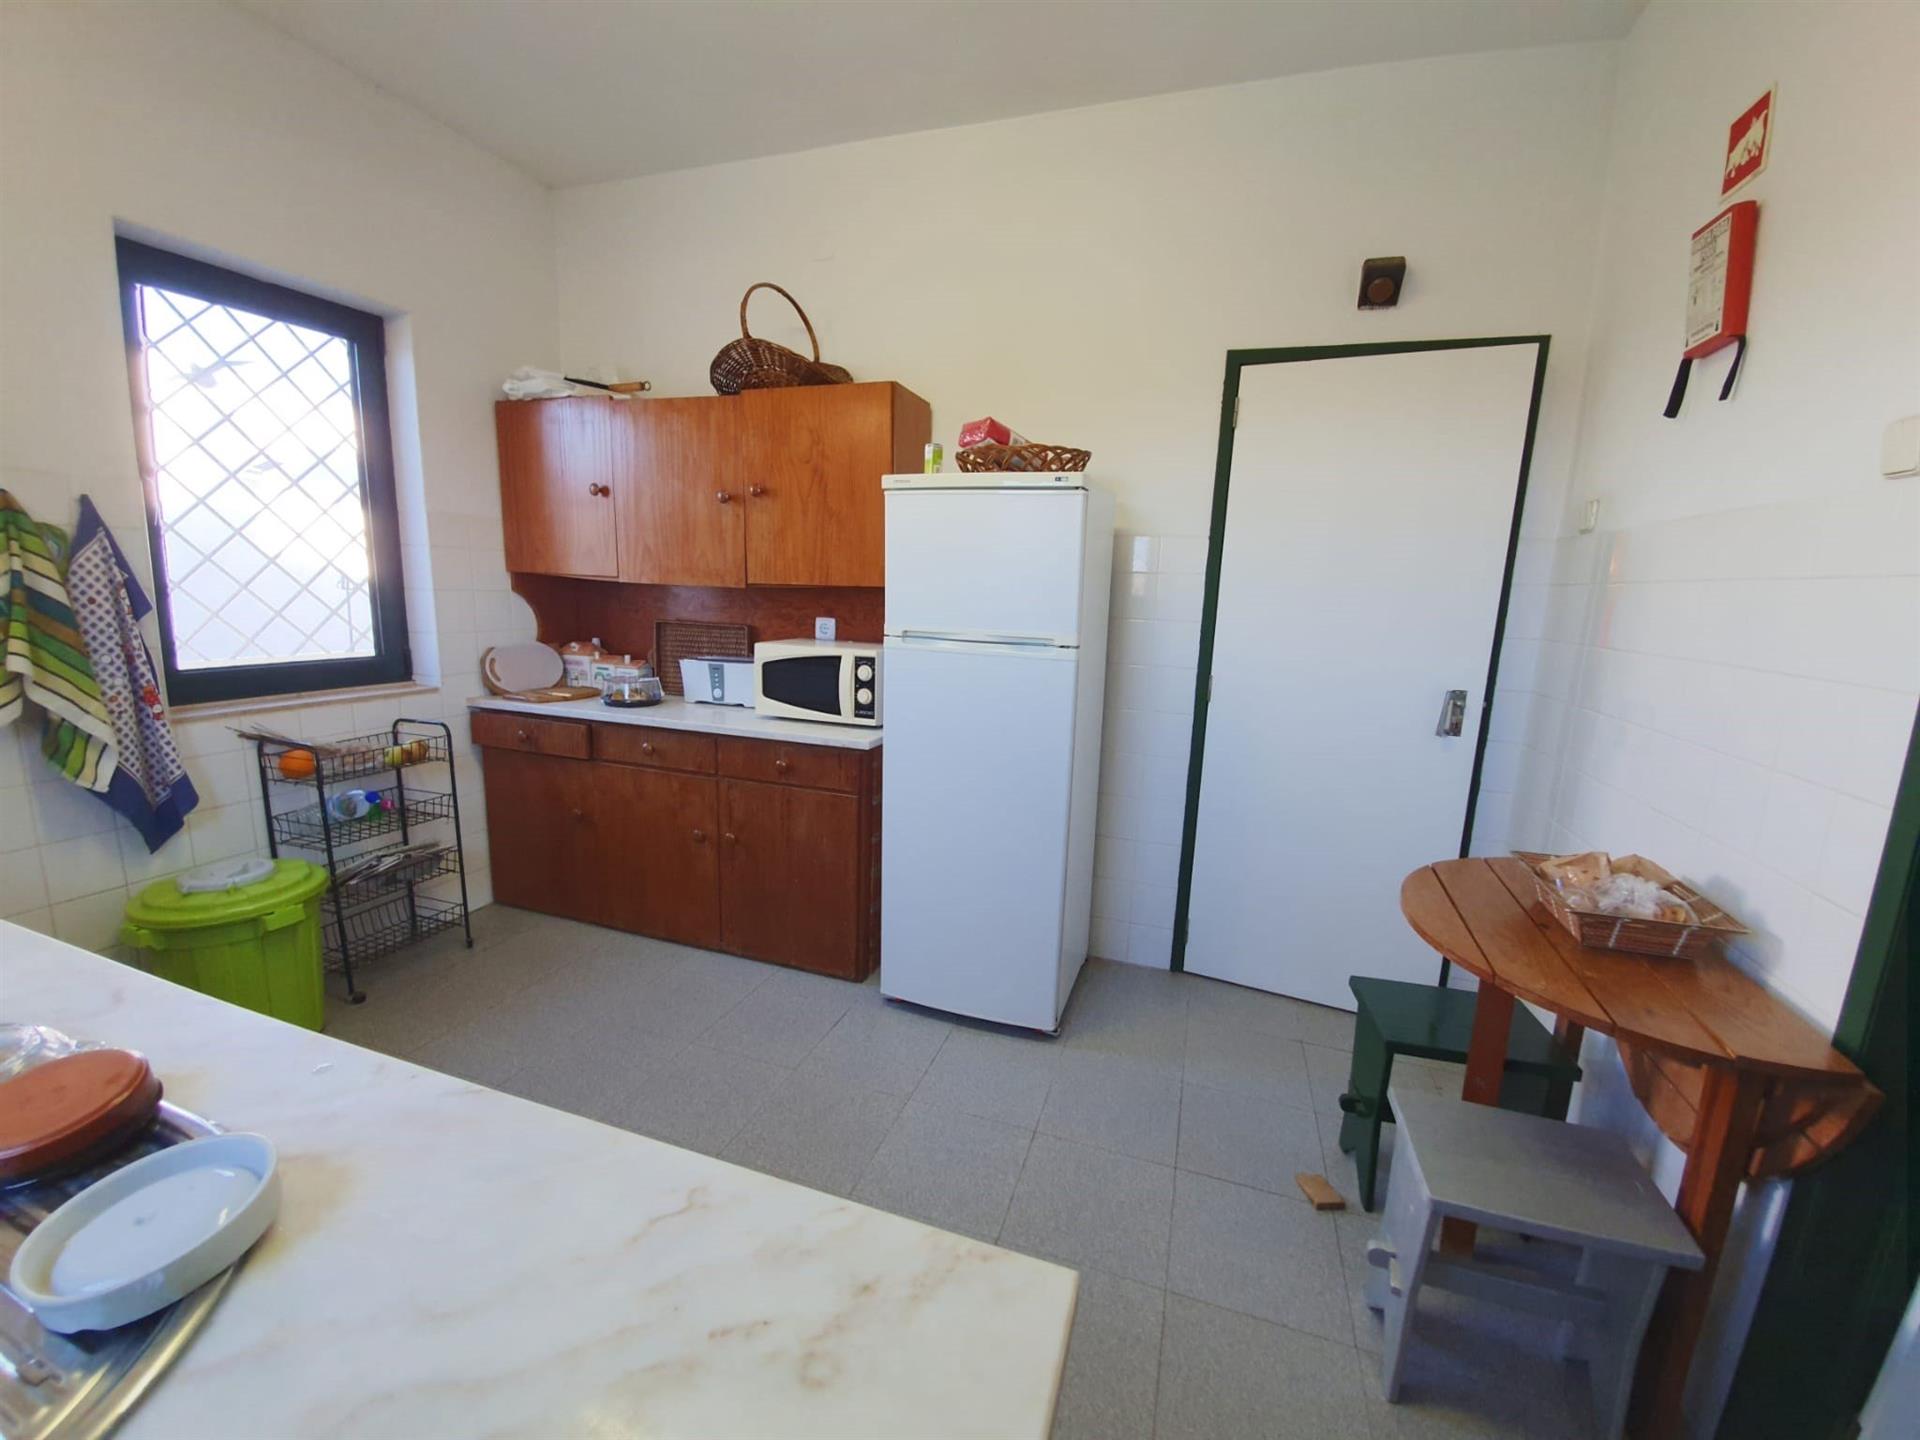 3 + 3 slaapkamer villa met garage te koop in Alvor